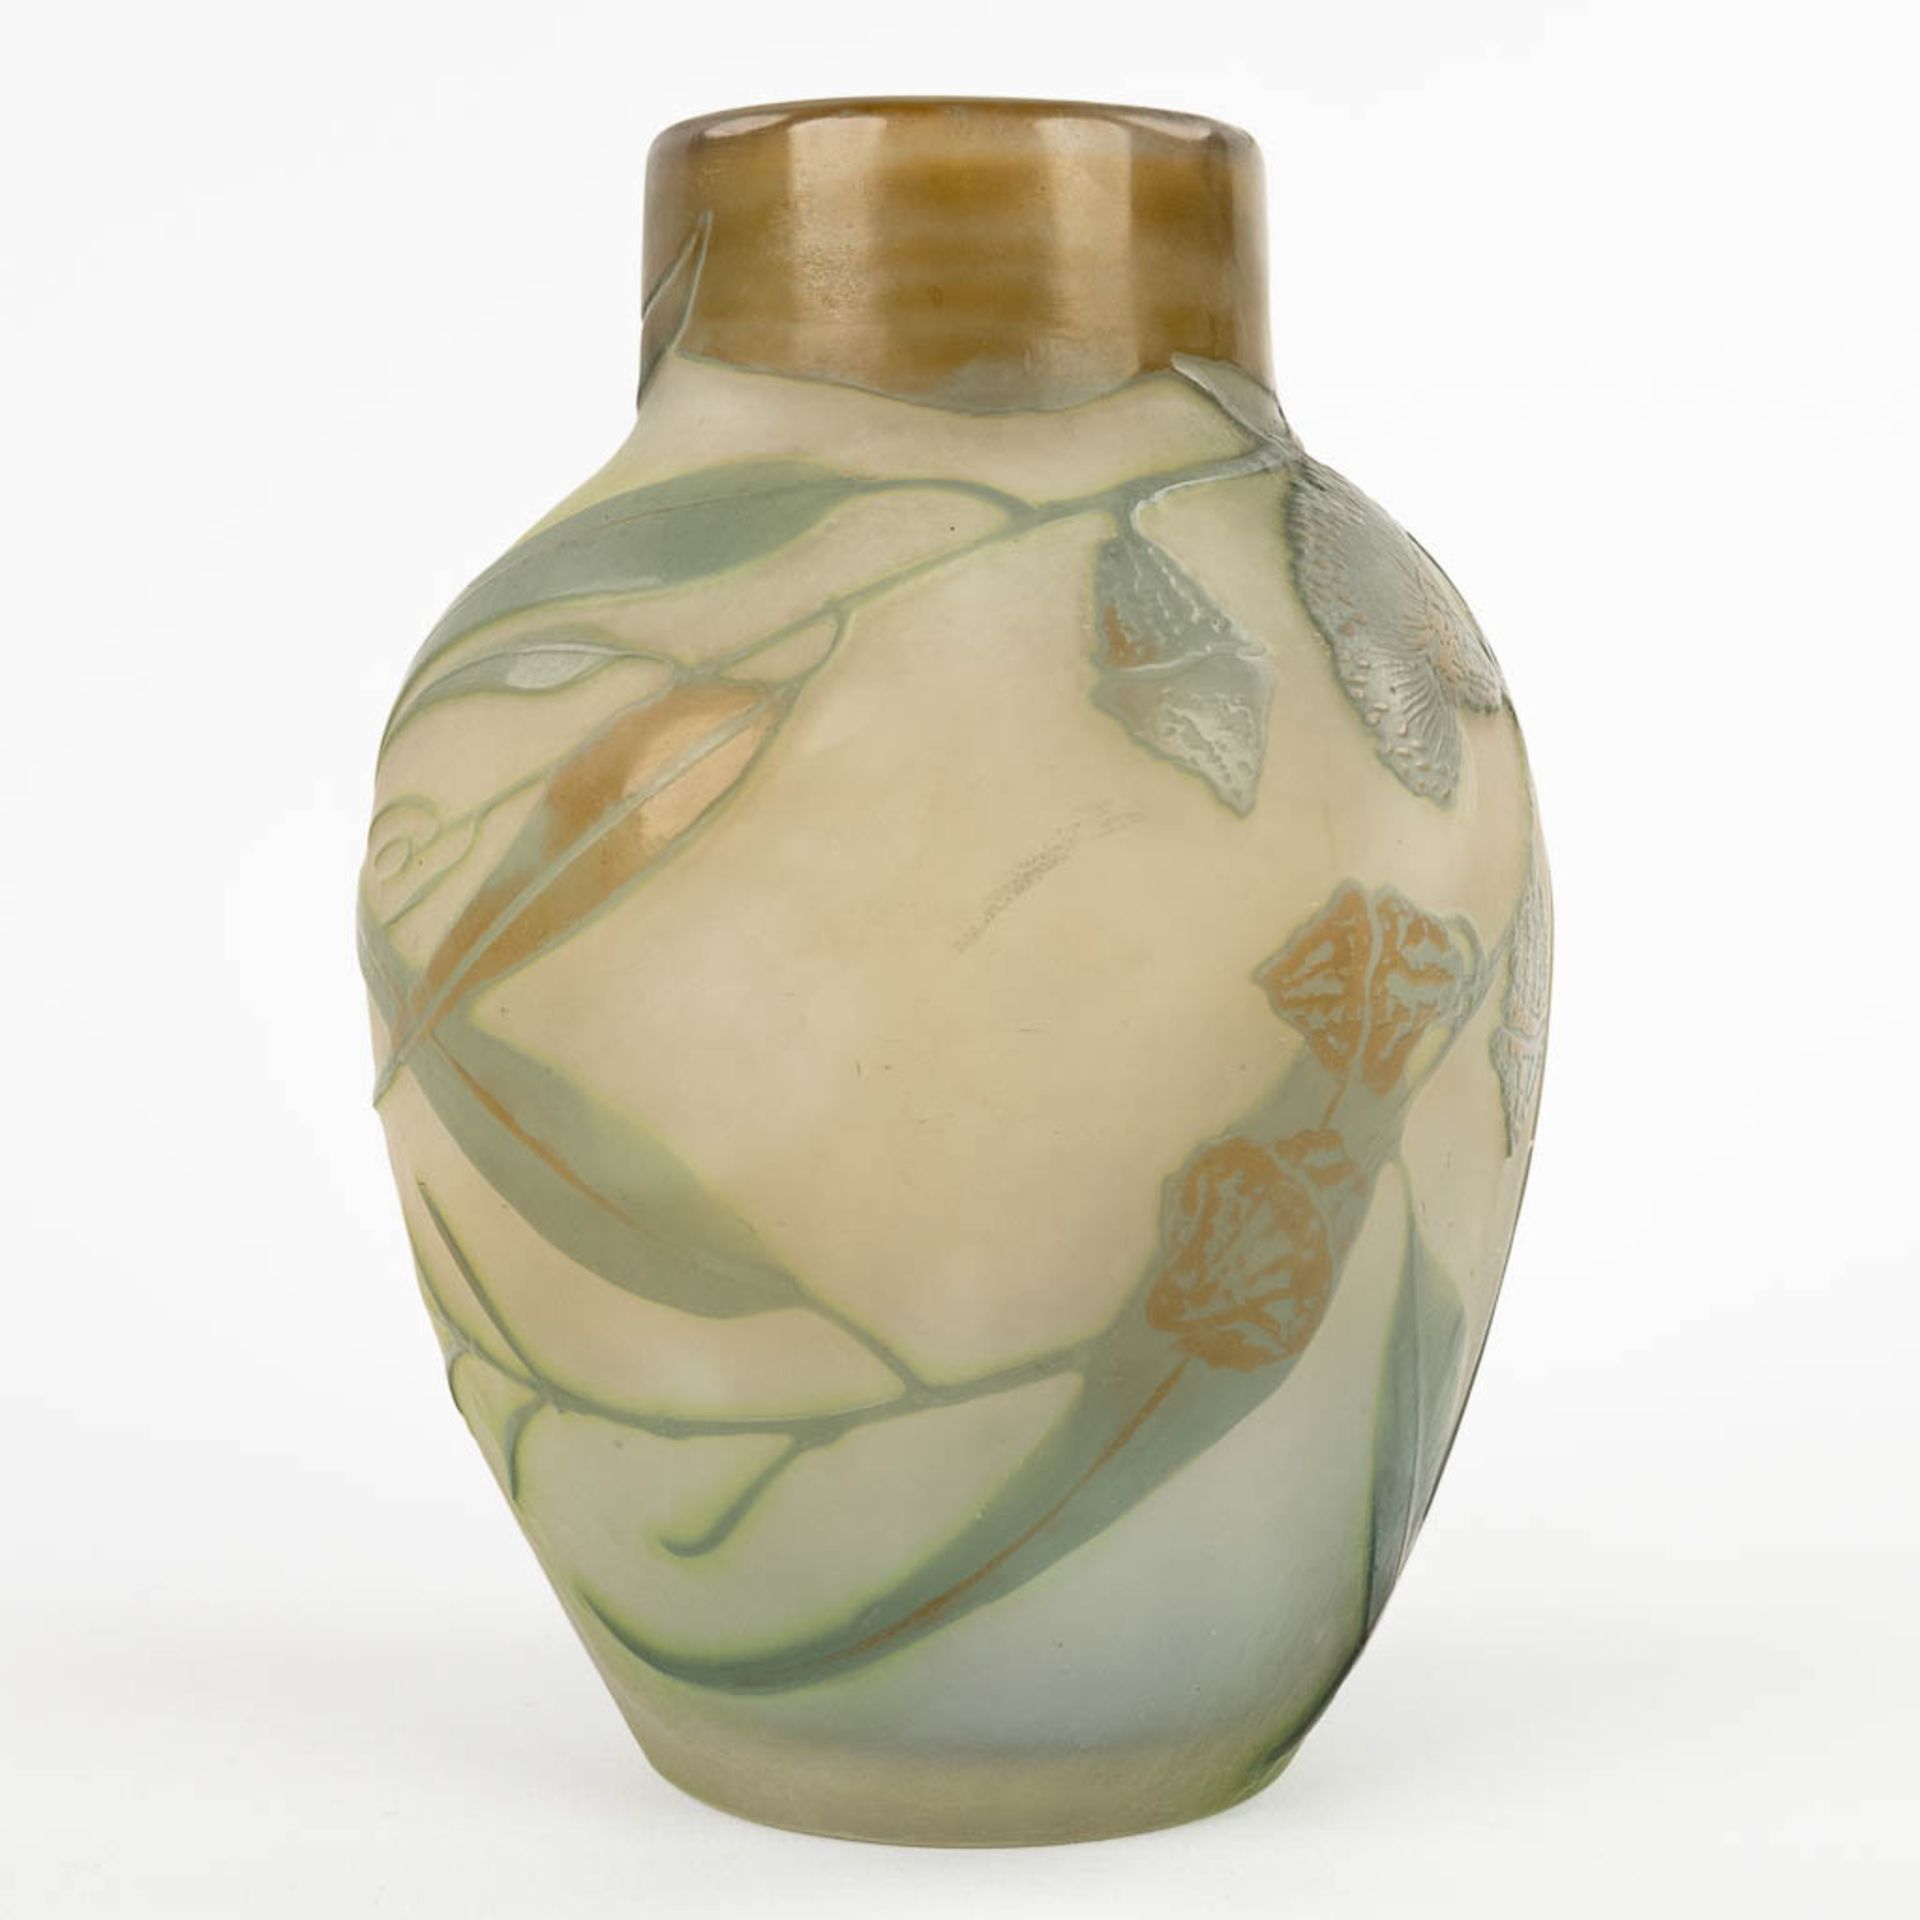 Emile GALLE (1846-1904) 'Vase' pate de verre glass. Circa 1905-1908. (H:18 x D:13 cm) - Bild 4 aus 10